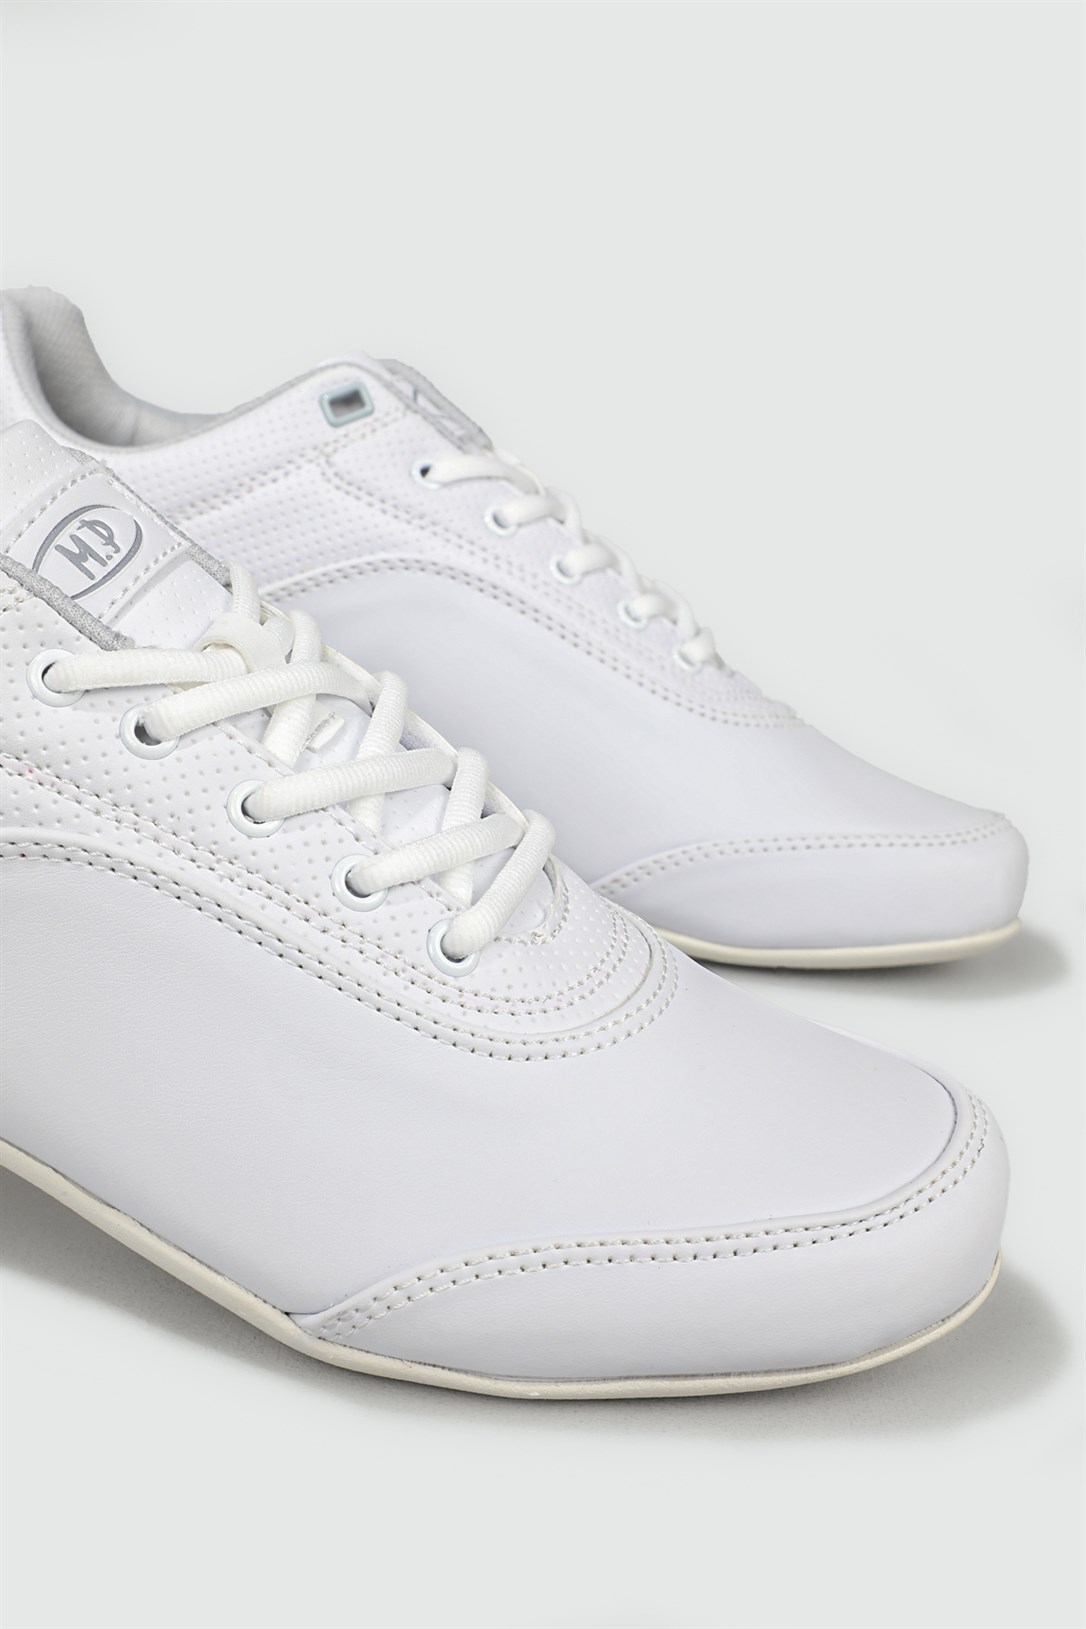 M.P Casual Beyaz Erkek Spor Ayakkabı 221-7332